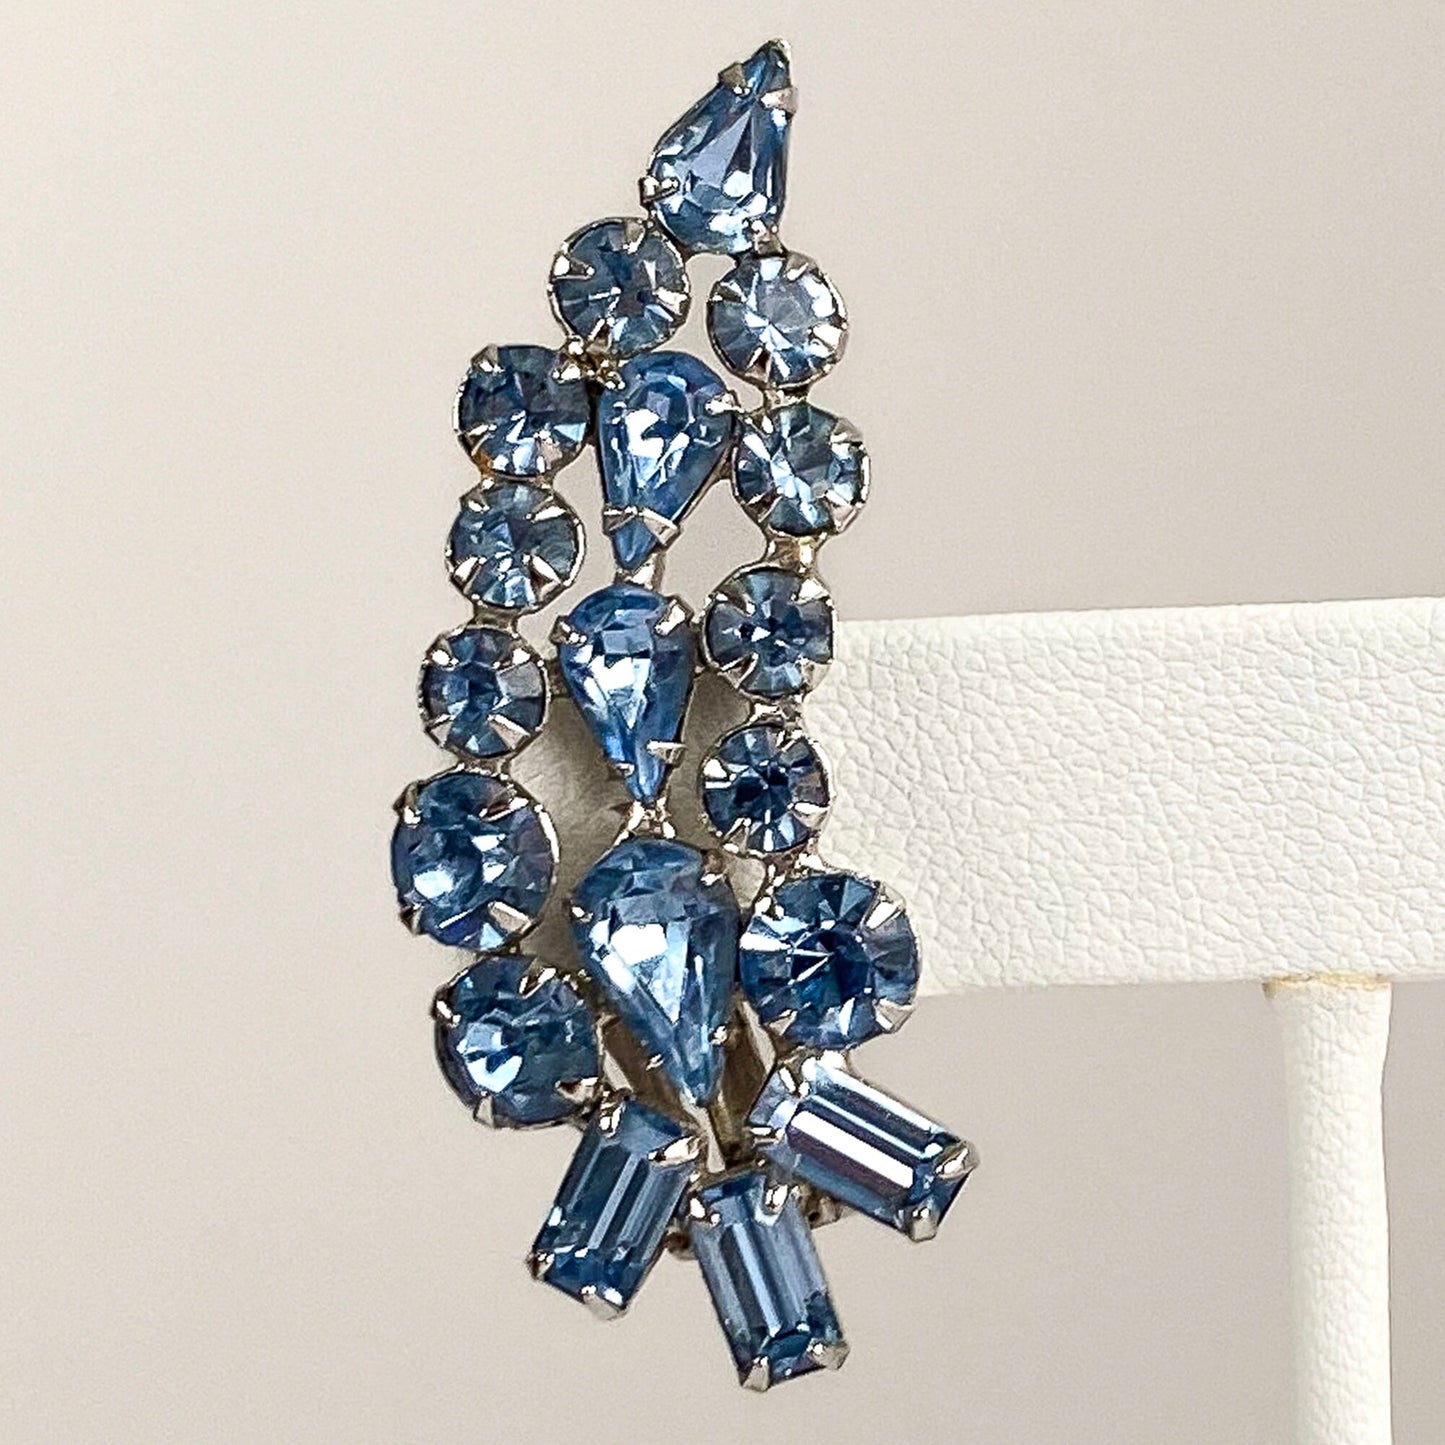 1950s Blue Rhinestone Statement Earrings